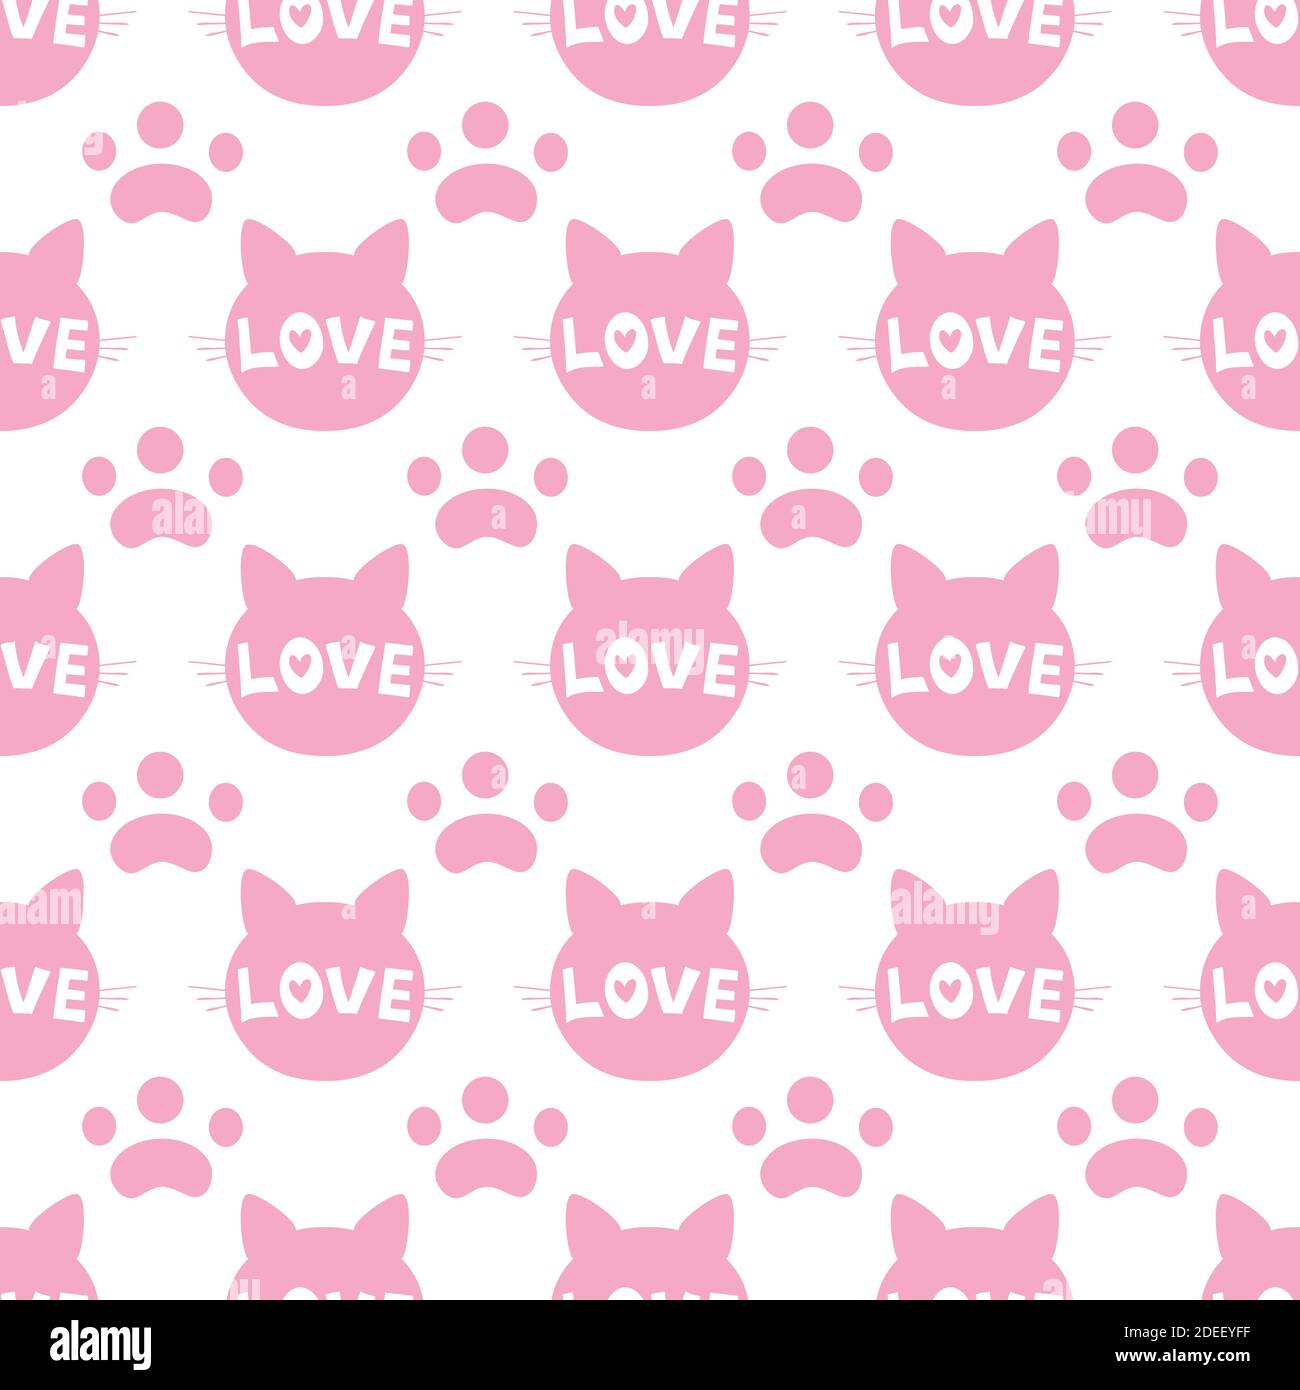 Nahtloses Muster aus rosa Katzenköpfen auf weißem Hintergrund. Vektorgrafik. Silhouette eines Tieres. Tapeten- und Stoffdesign und -Einrichtung. Stock Vektor